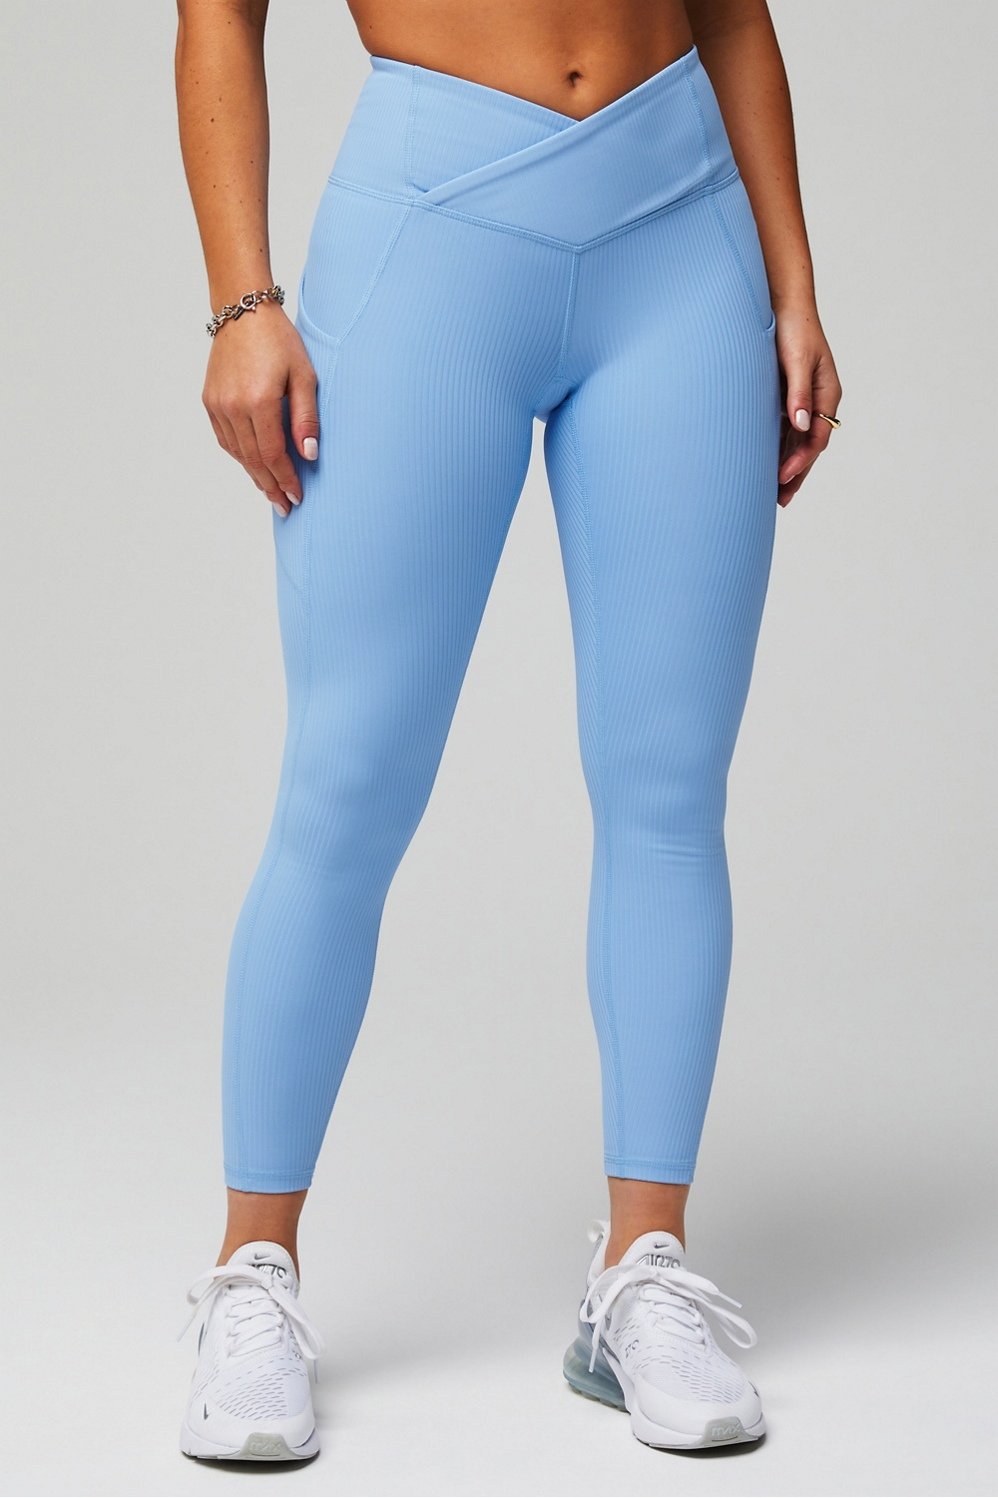 OASISWORKS Women's High Waisted Leggings, ⅞ Length 25 Inch Inseam Yoga  Pants